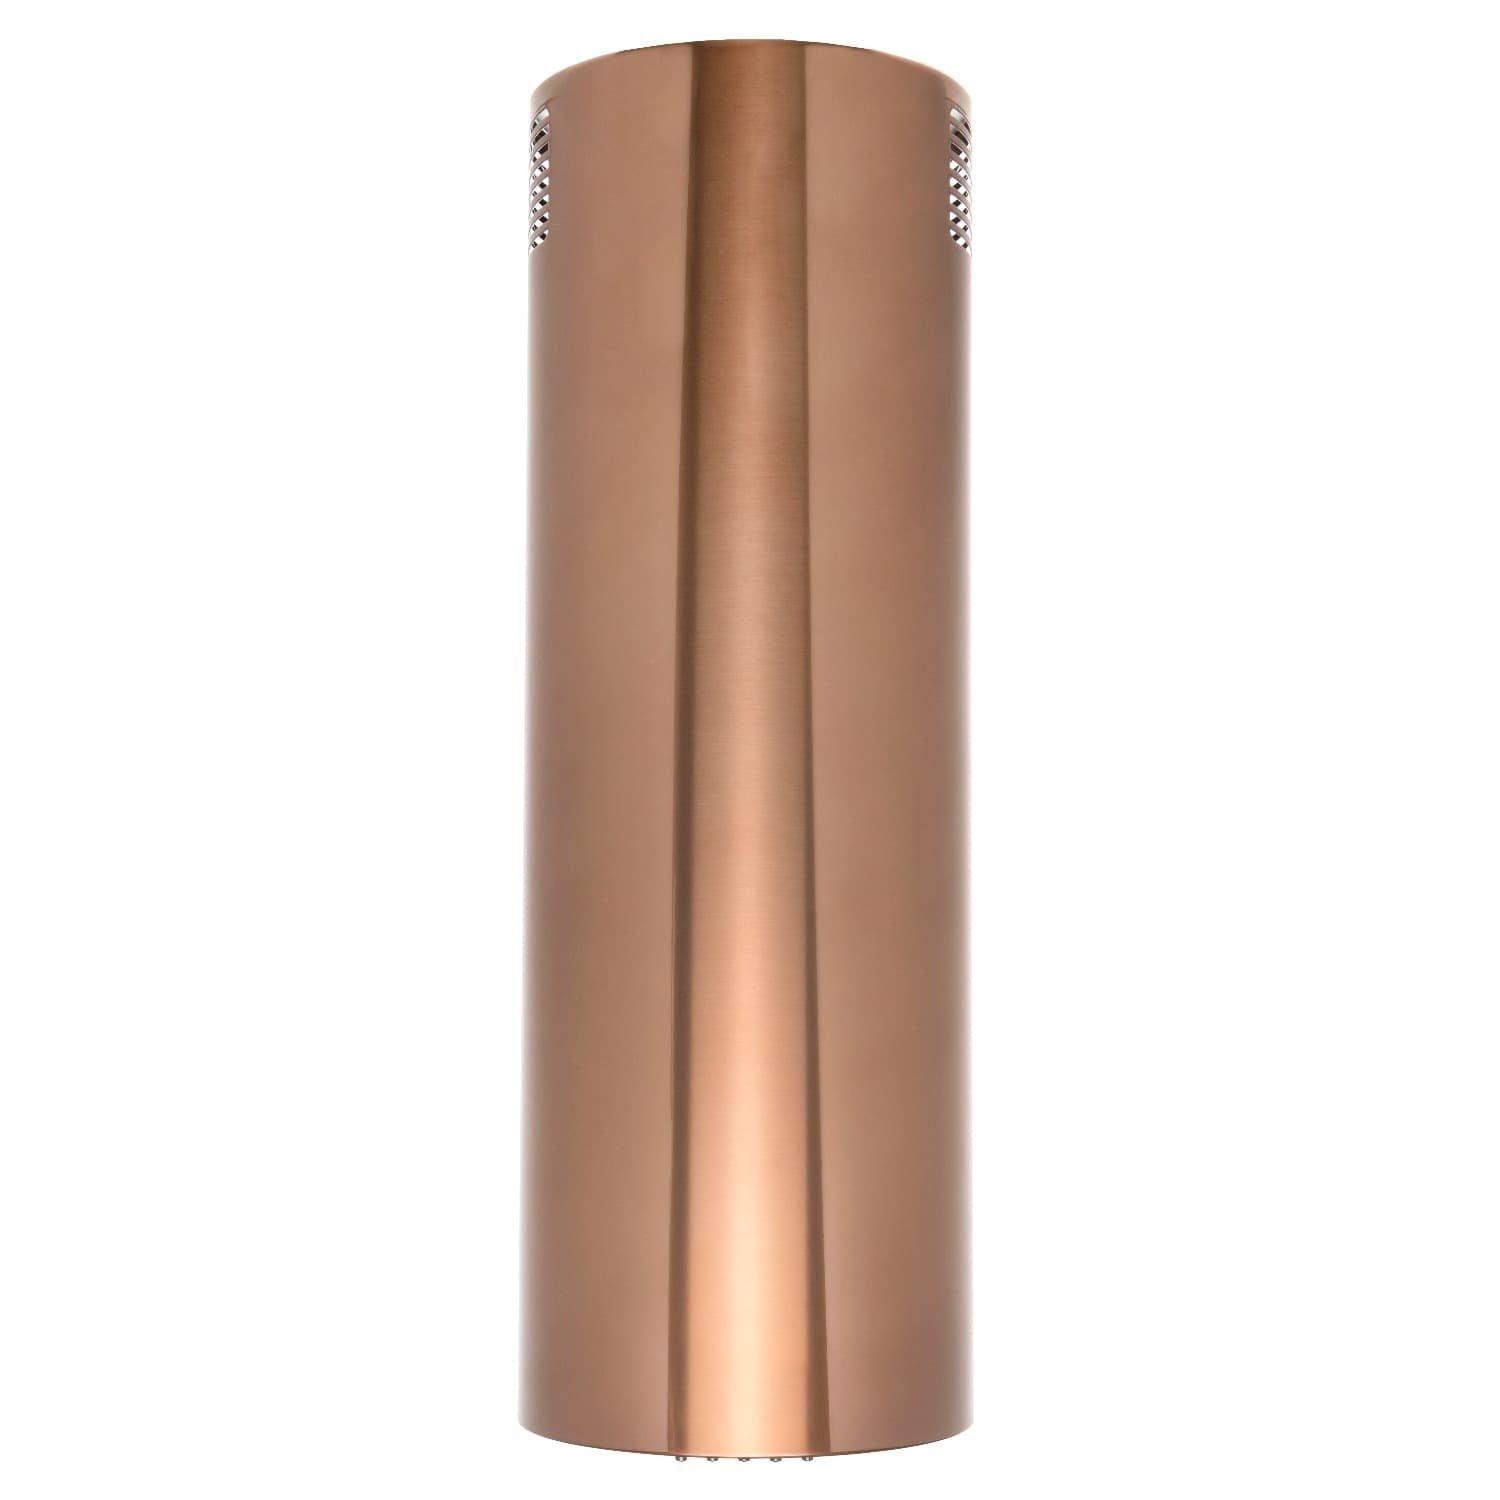 Вытяжка настенная Konigin Beauty Copper 31 коричневая вытяжка настенная konigin beauty copper 31 коричневая